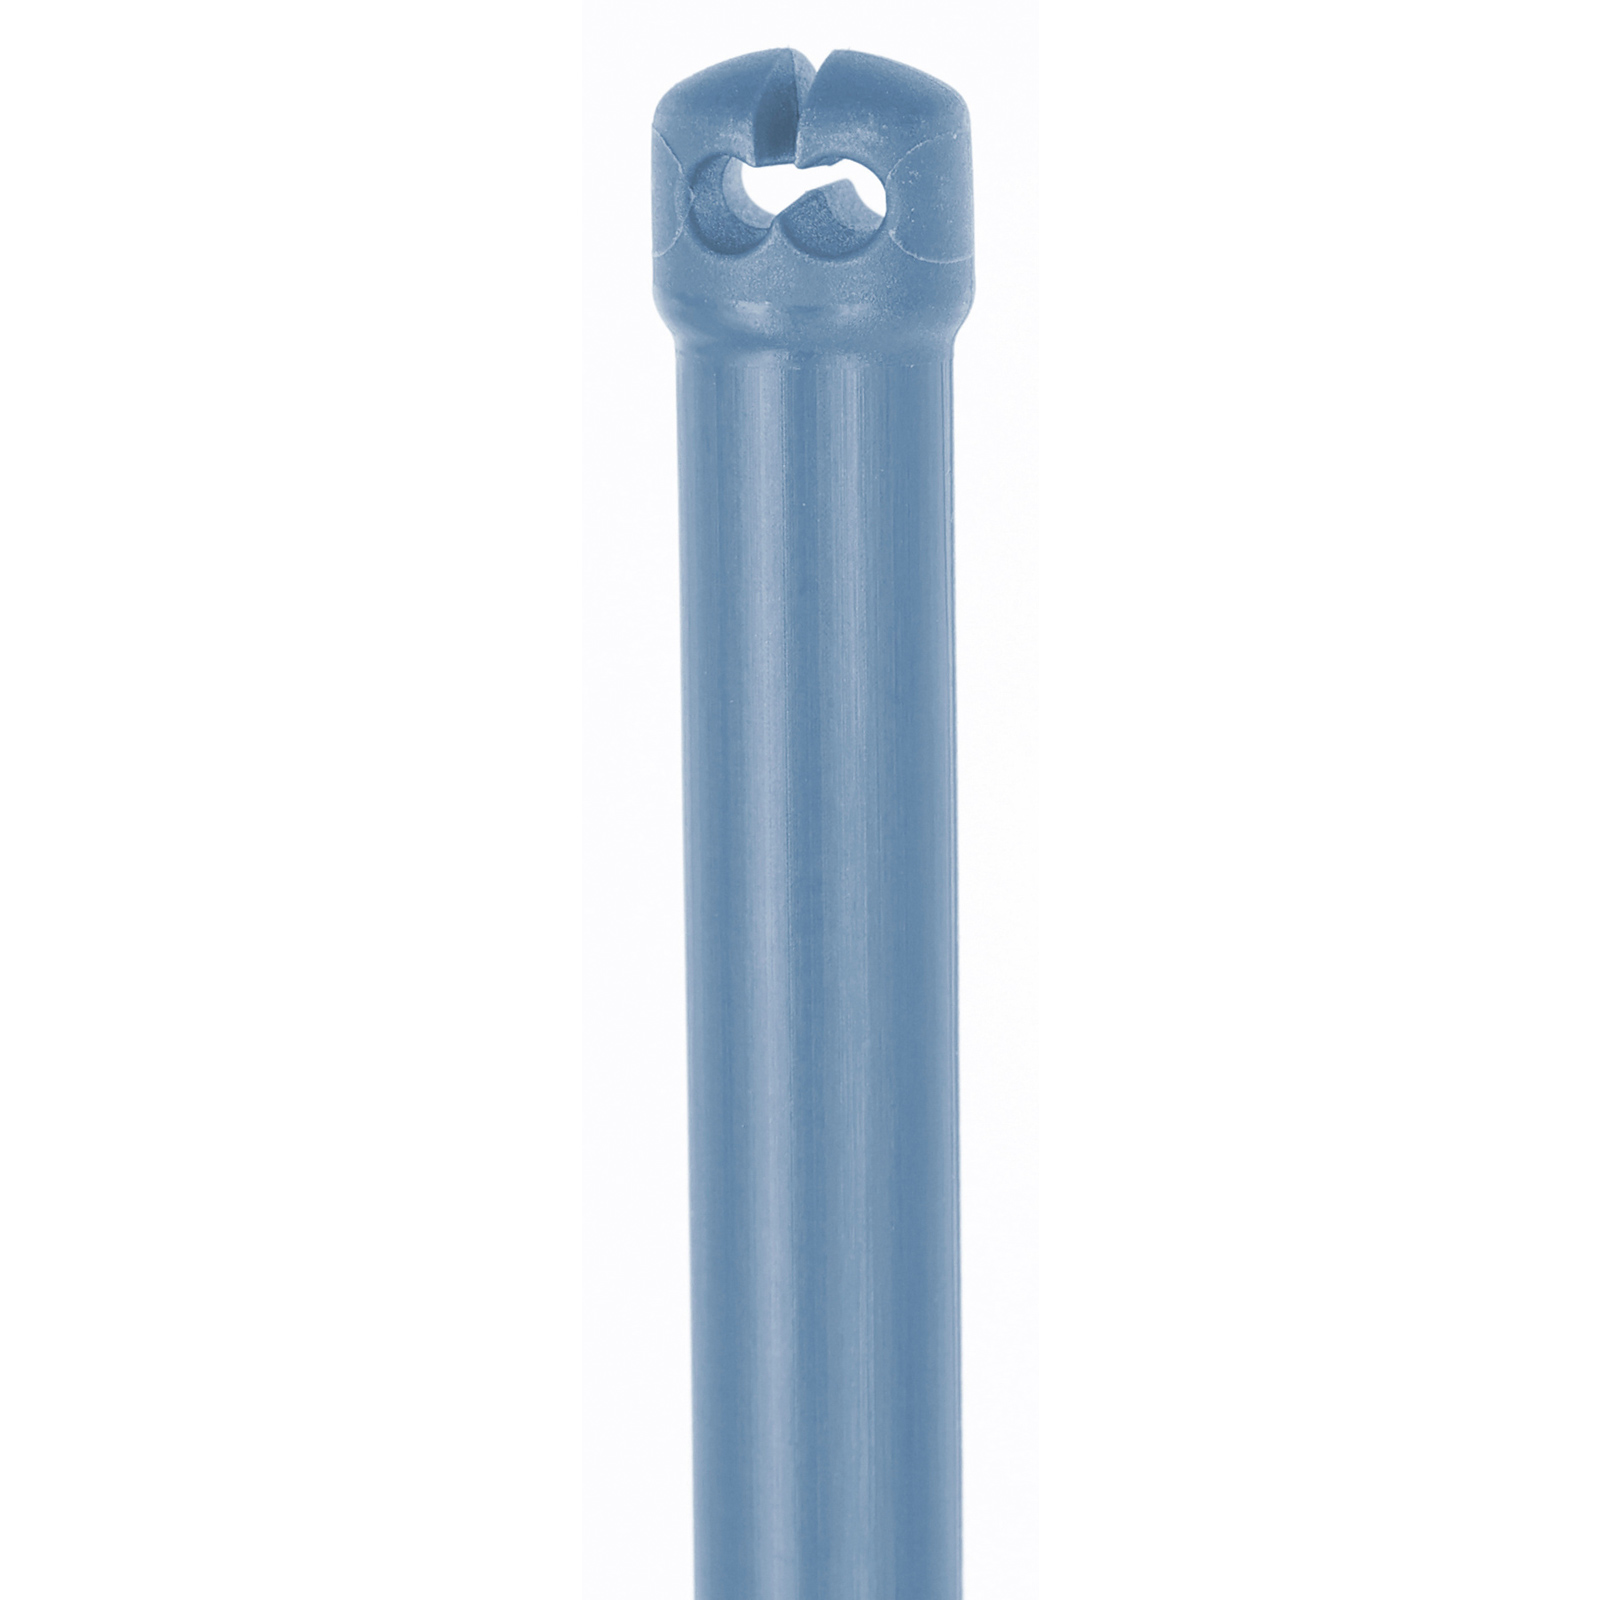 Prémium Thermoplast üvegszálas karó villanypásztor hálóhoz, dupla tüske, kék 90 cm